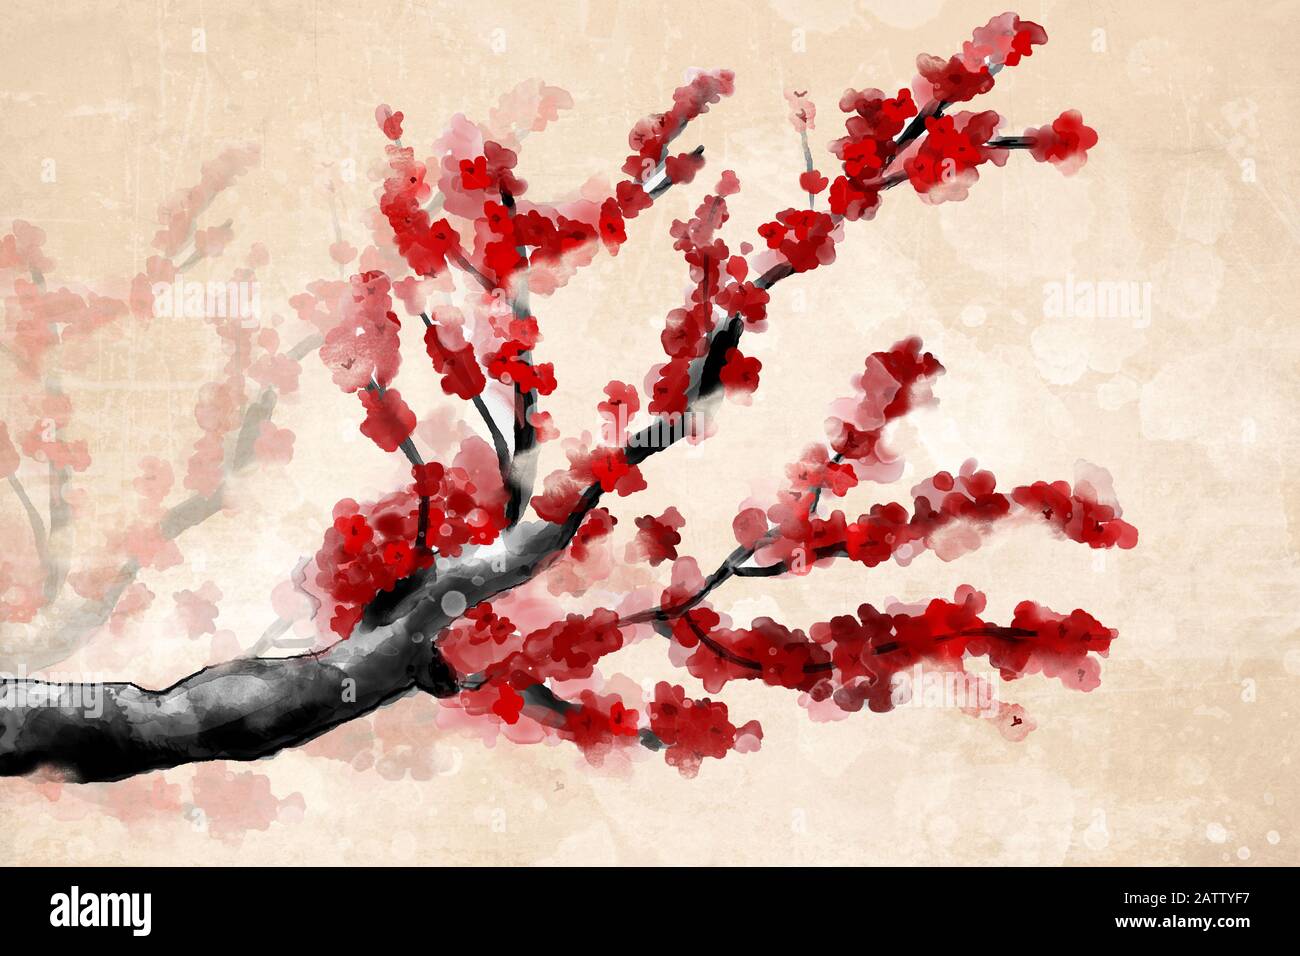 Frühlings- und Sommer-Blumen-Kollektion - japanischer Kirschbaum mit wunderschönen roten Blumen im digitalen Aquarellstil Stockfoto